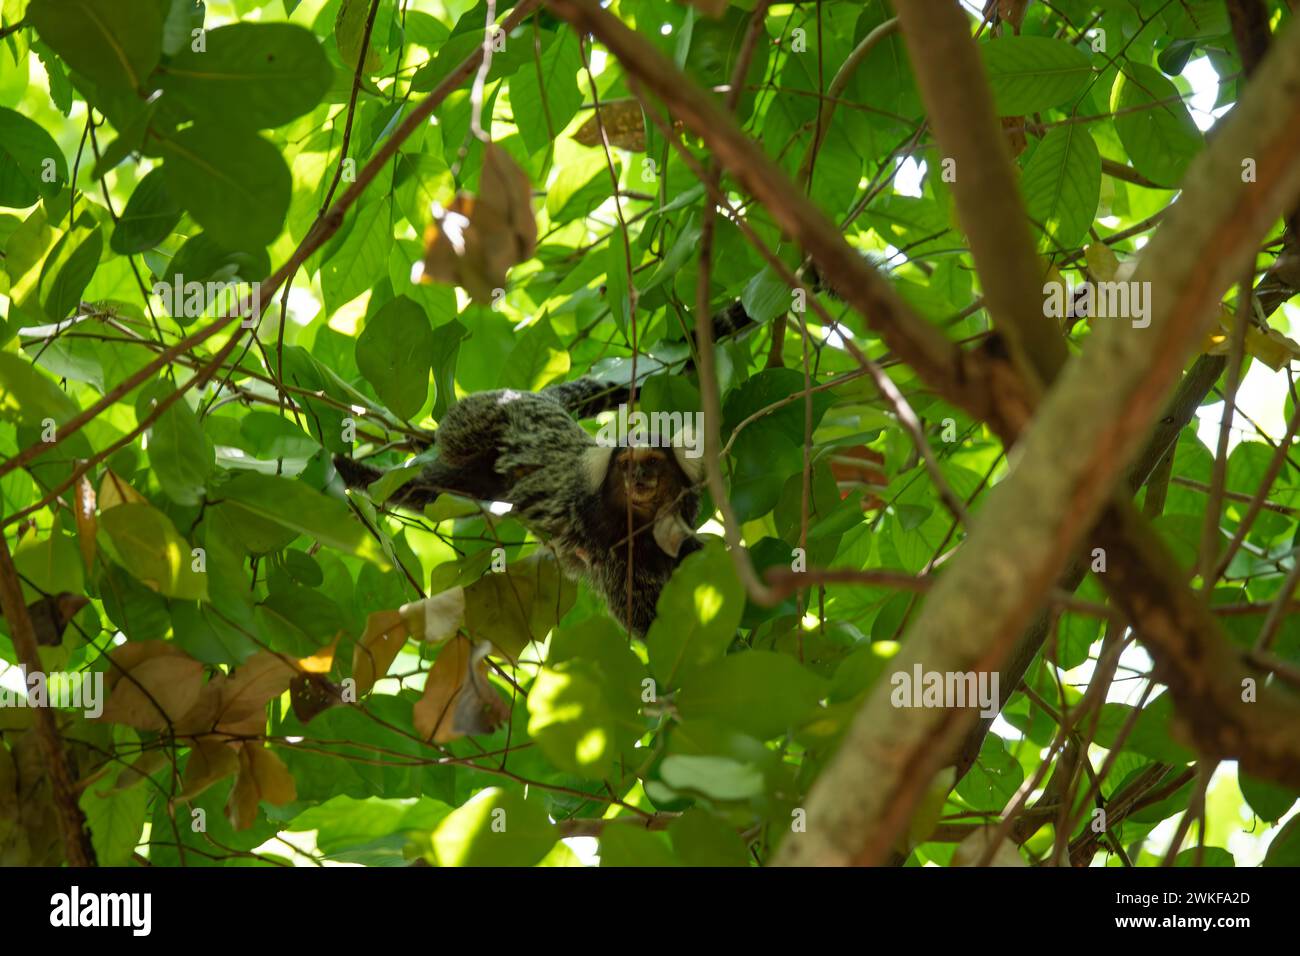 marmoset touffeté noir assis sur une branche dans un arbre Banque D'Images